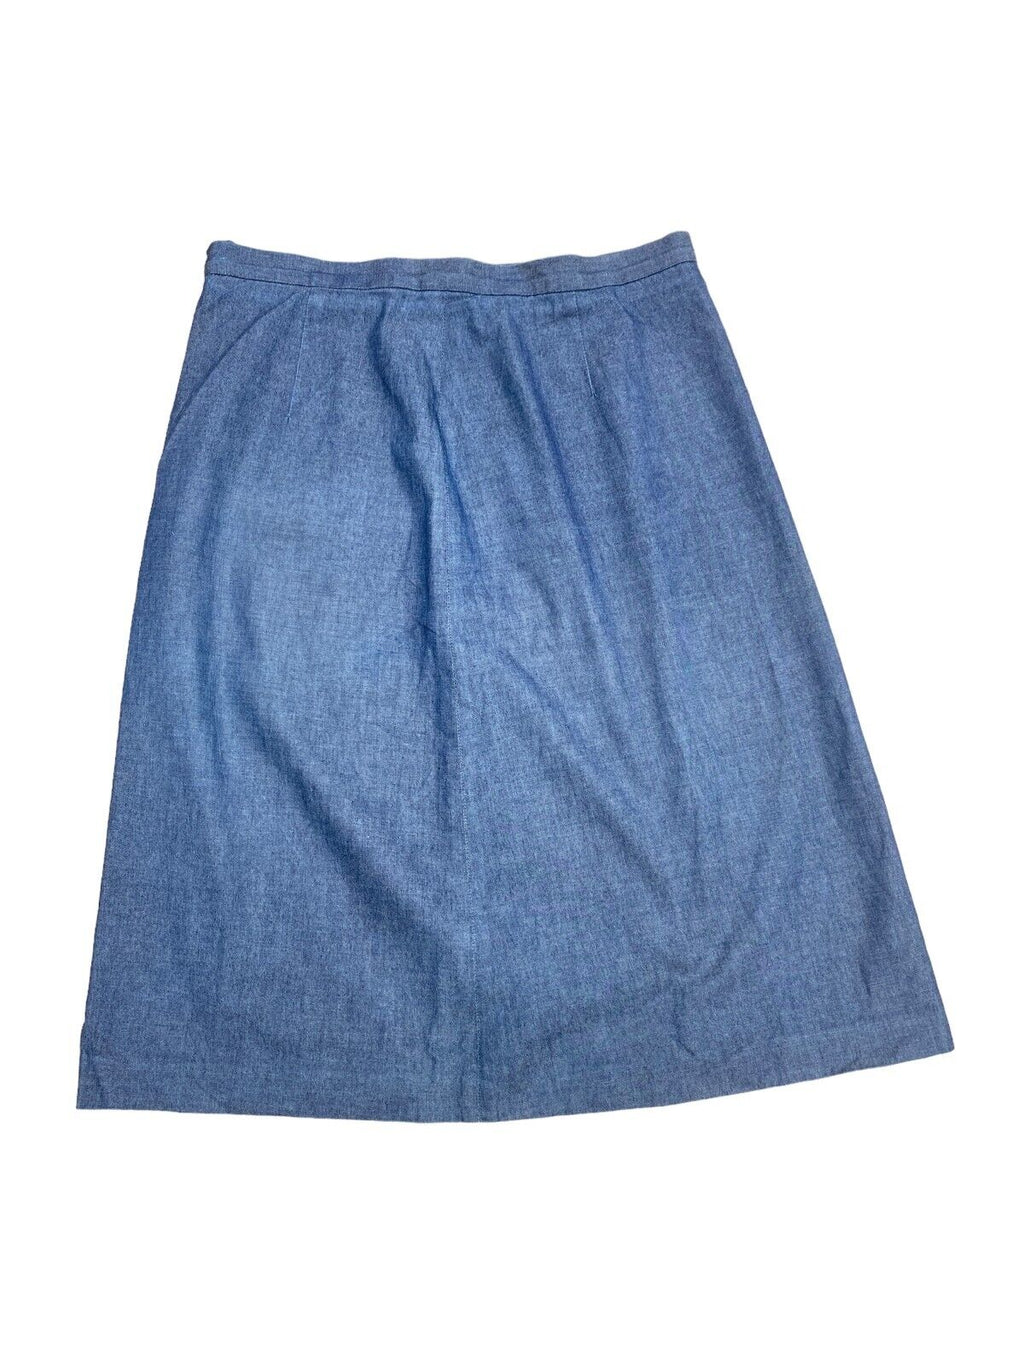 Blue denim skirt